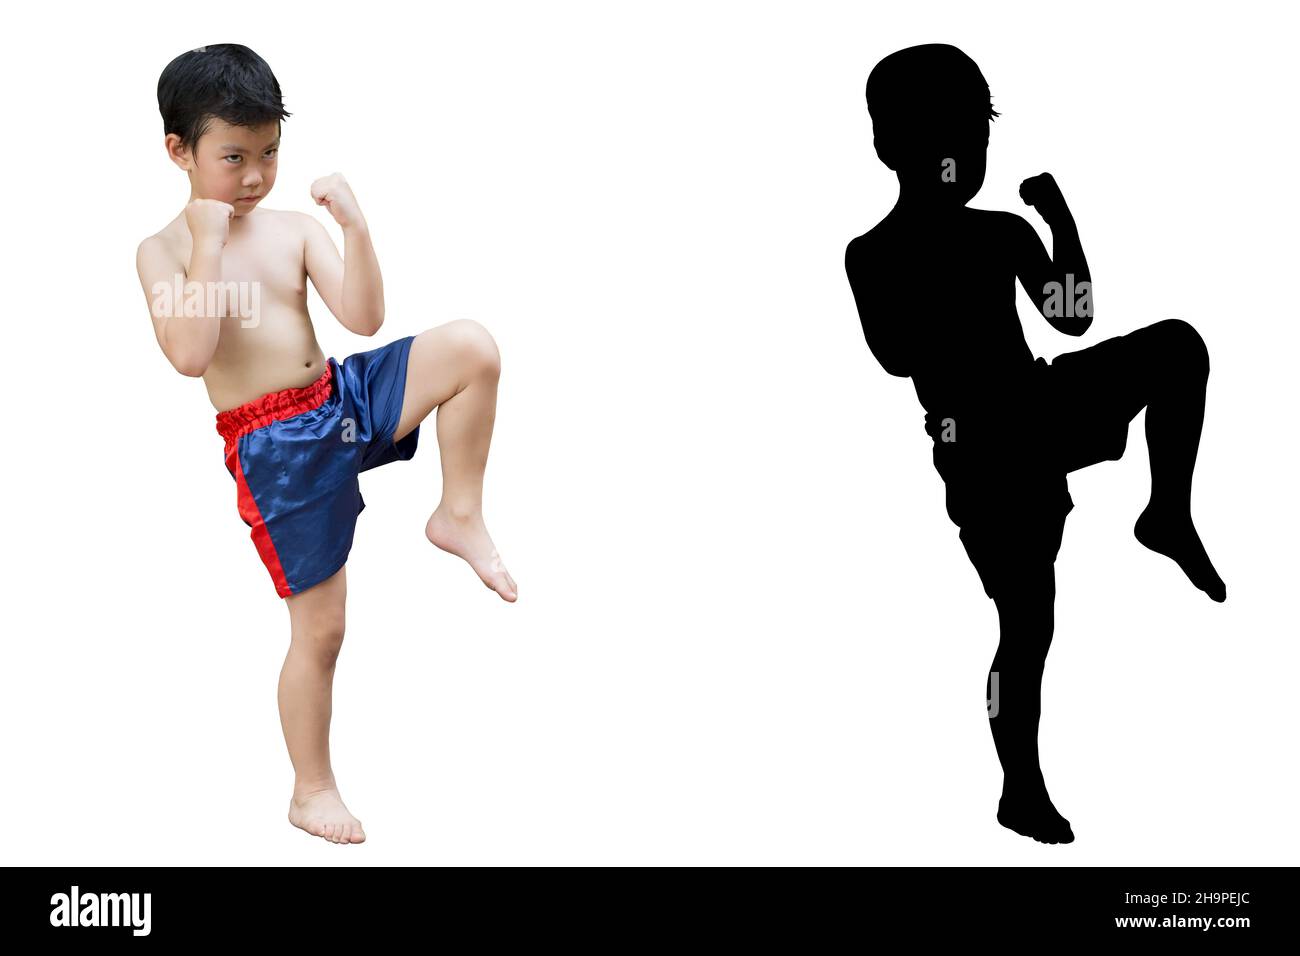 Kick boxing garçon combattant Kid avec Muay Thai garde stand isolé sur blanc avec ombre Banque D'Images